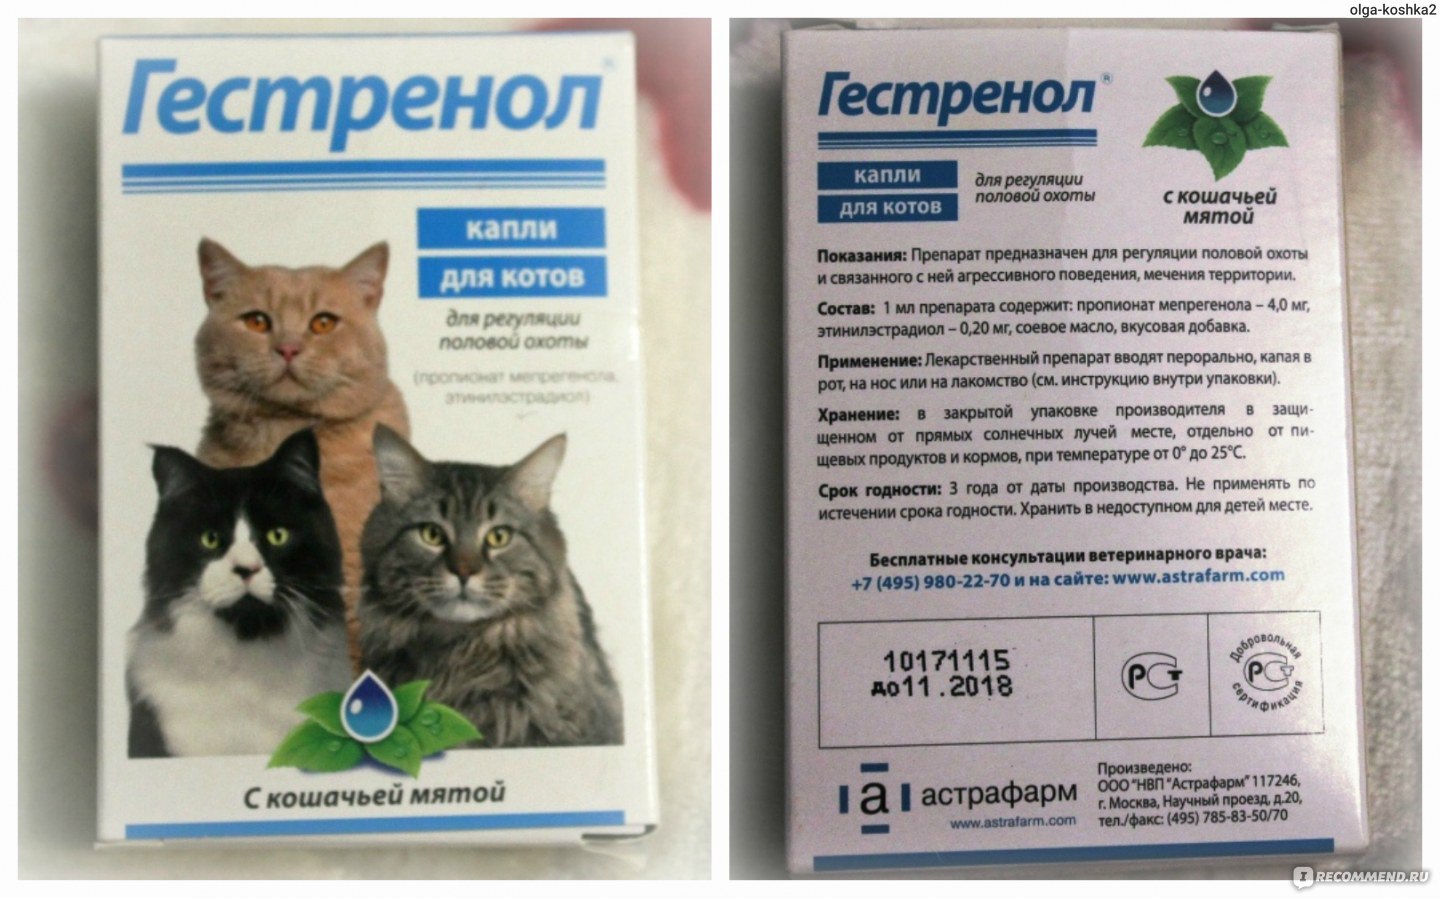 Капли для кошек от гуляния, таблетки, антисекс